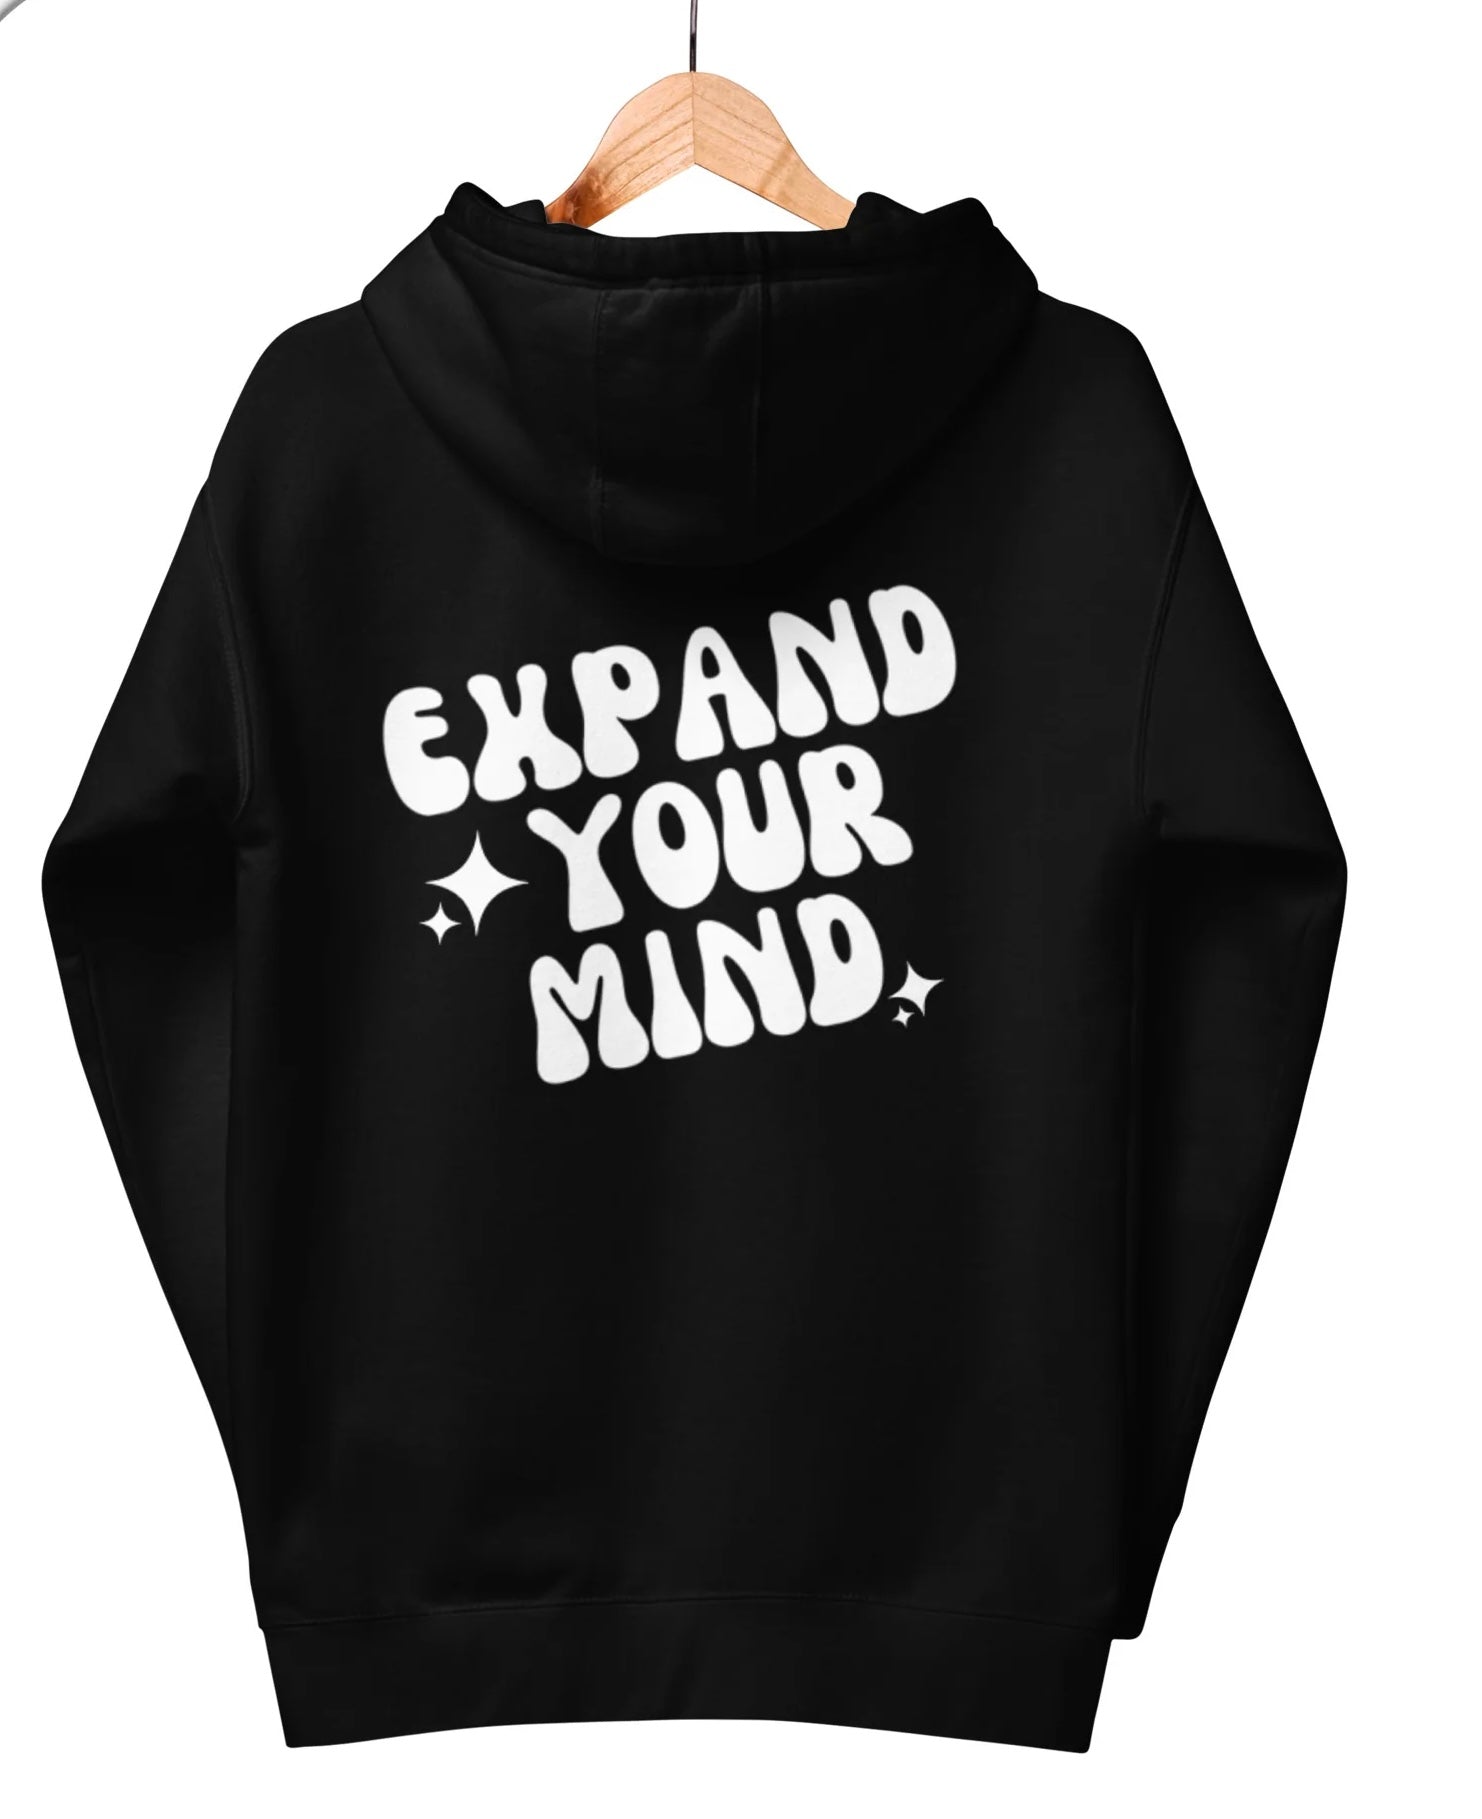 Expand your mind hoodie graphic hoodie tee mental health awareness black hoodie premium sweatshirt black sweatshirt comfy hoodie oversized 